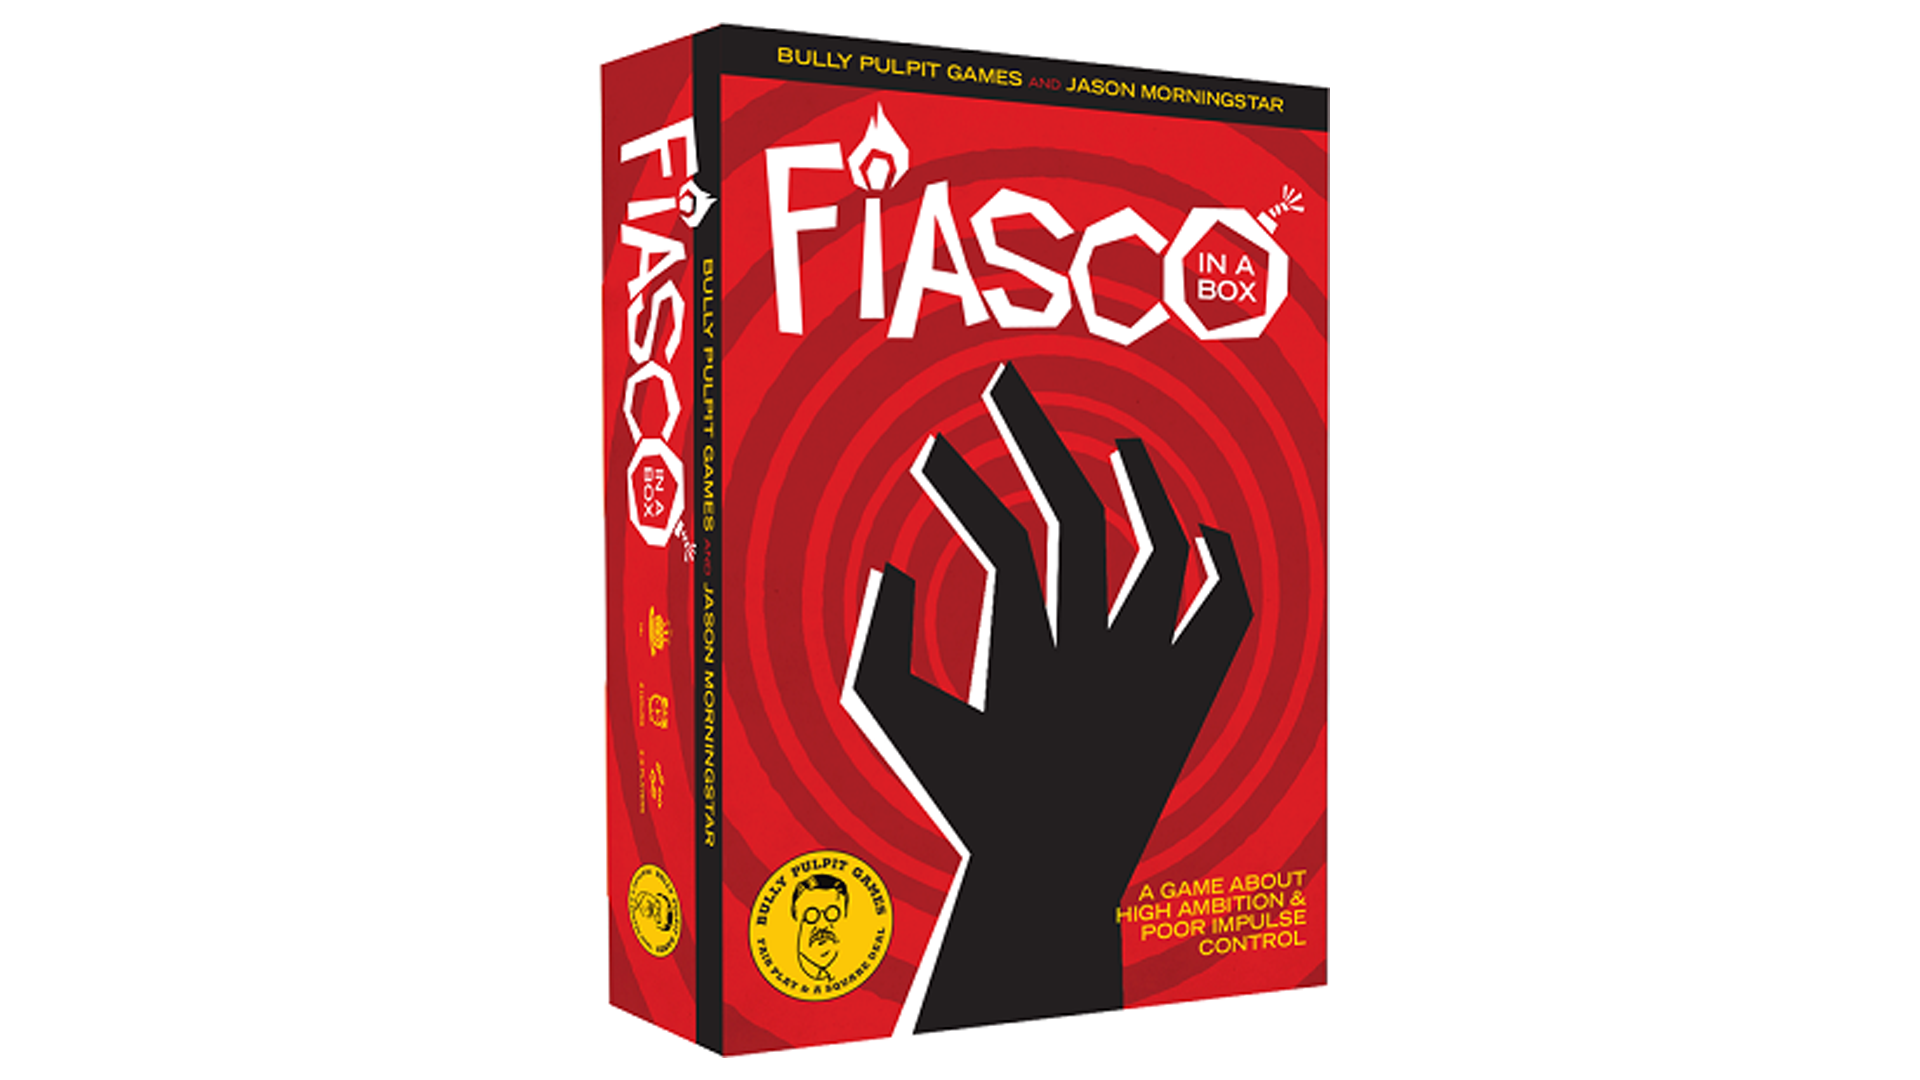 Fiasco! in a box RPG box